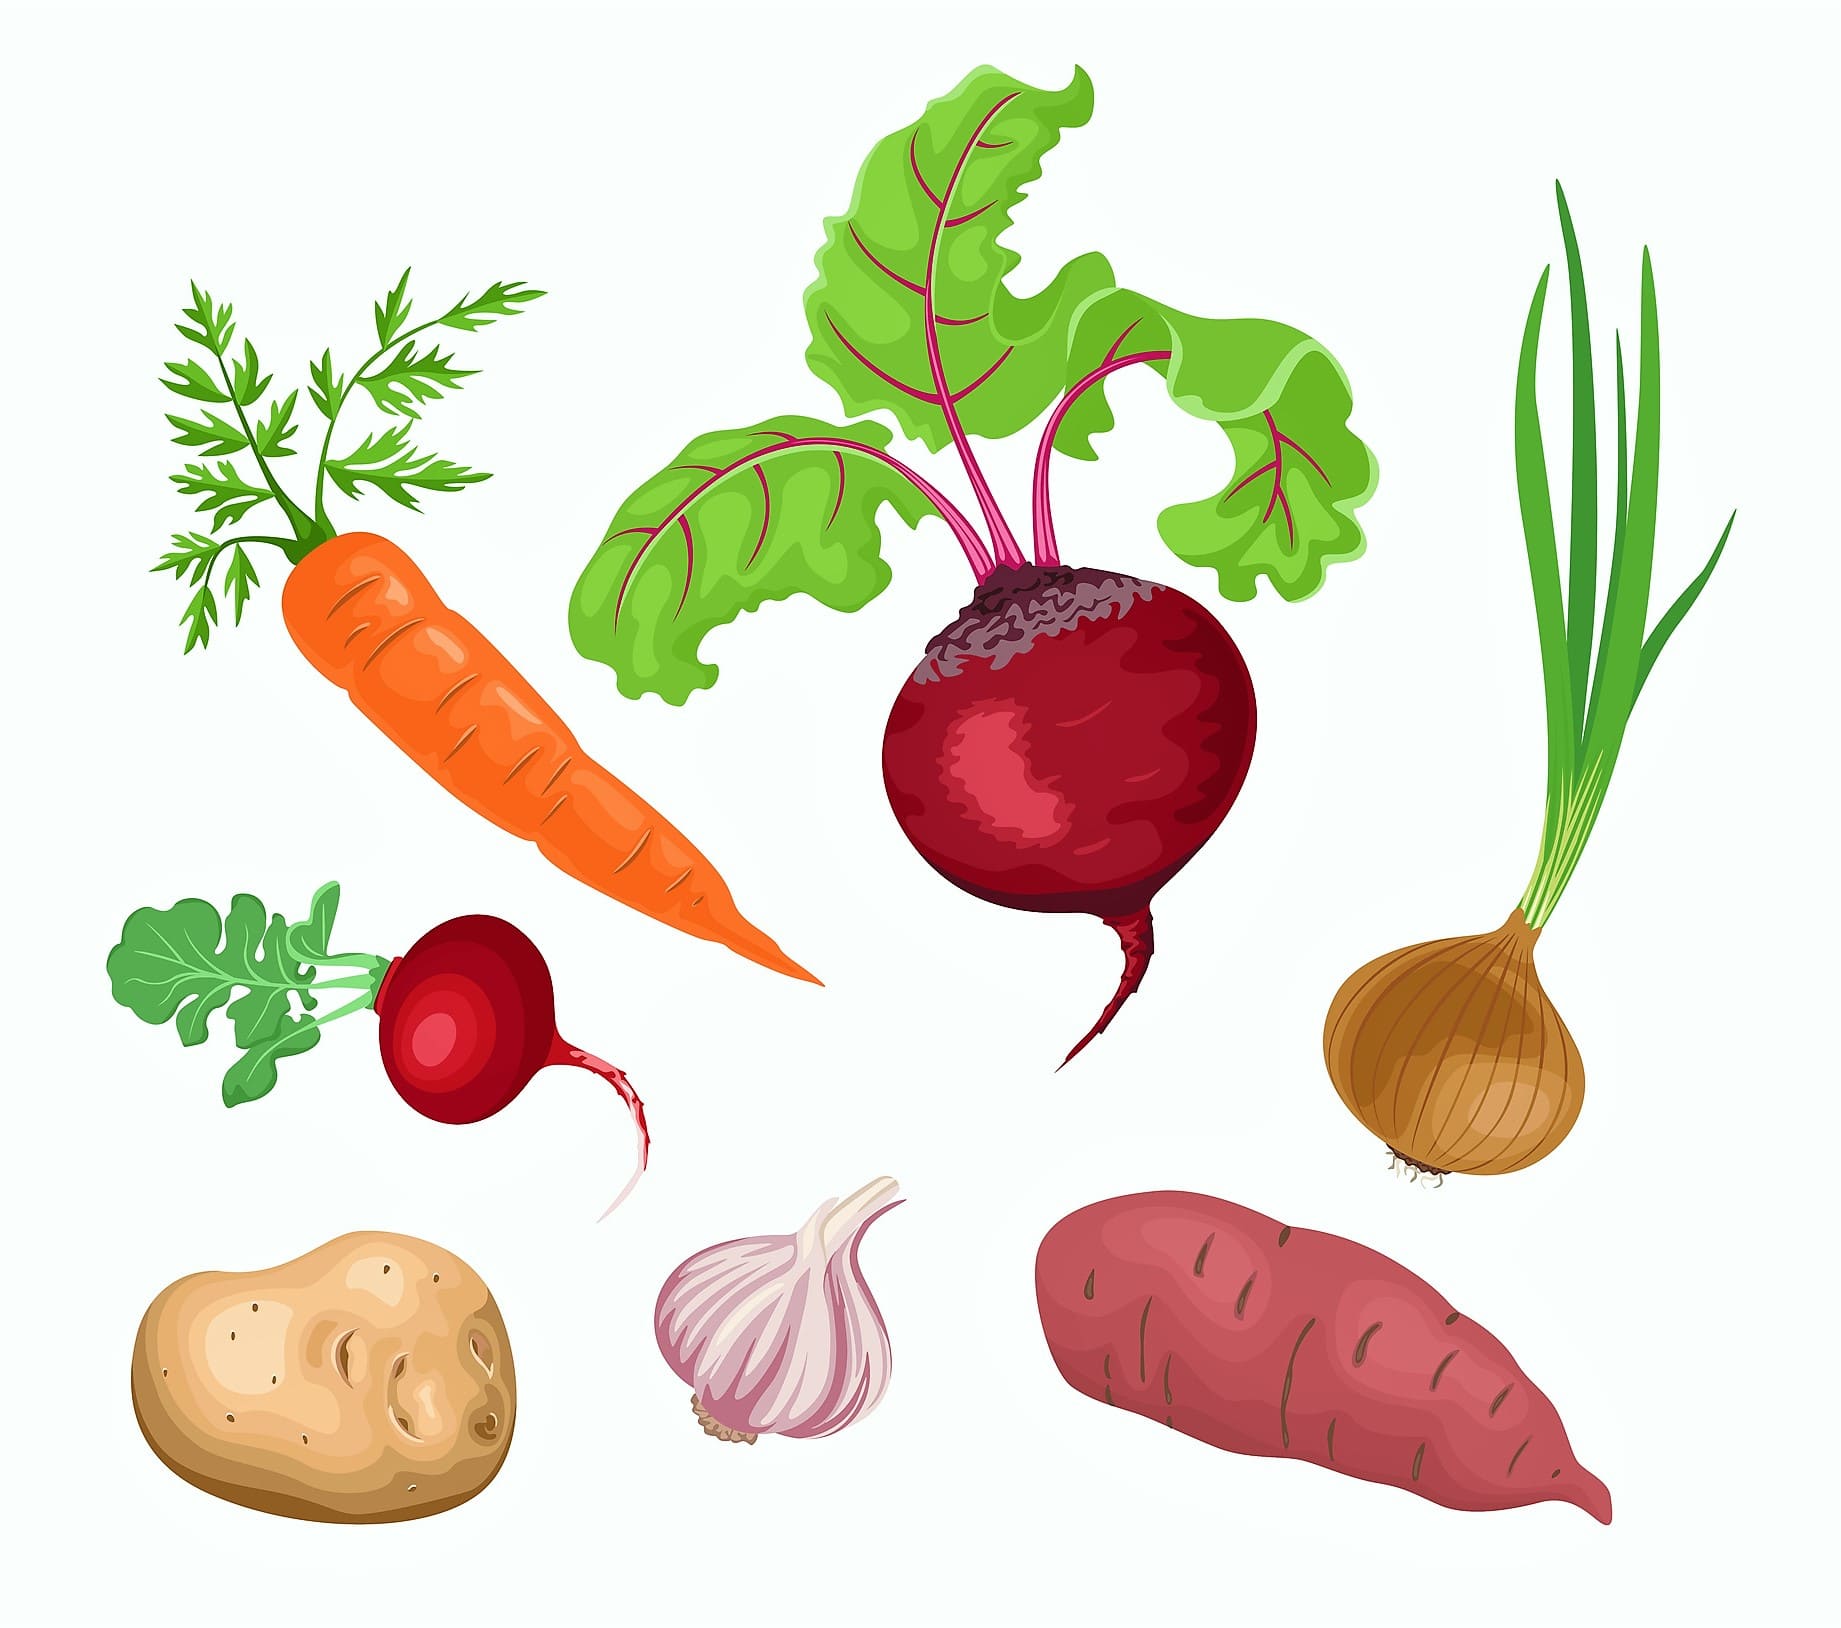 Ilustración con zanahoria, remolacha, rábano, ajo, batata, cebolla y otras hortalizas de raíz.